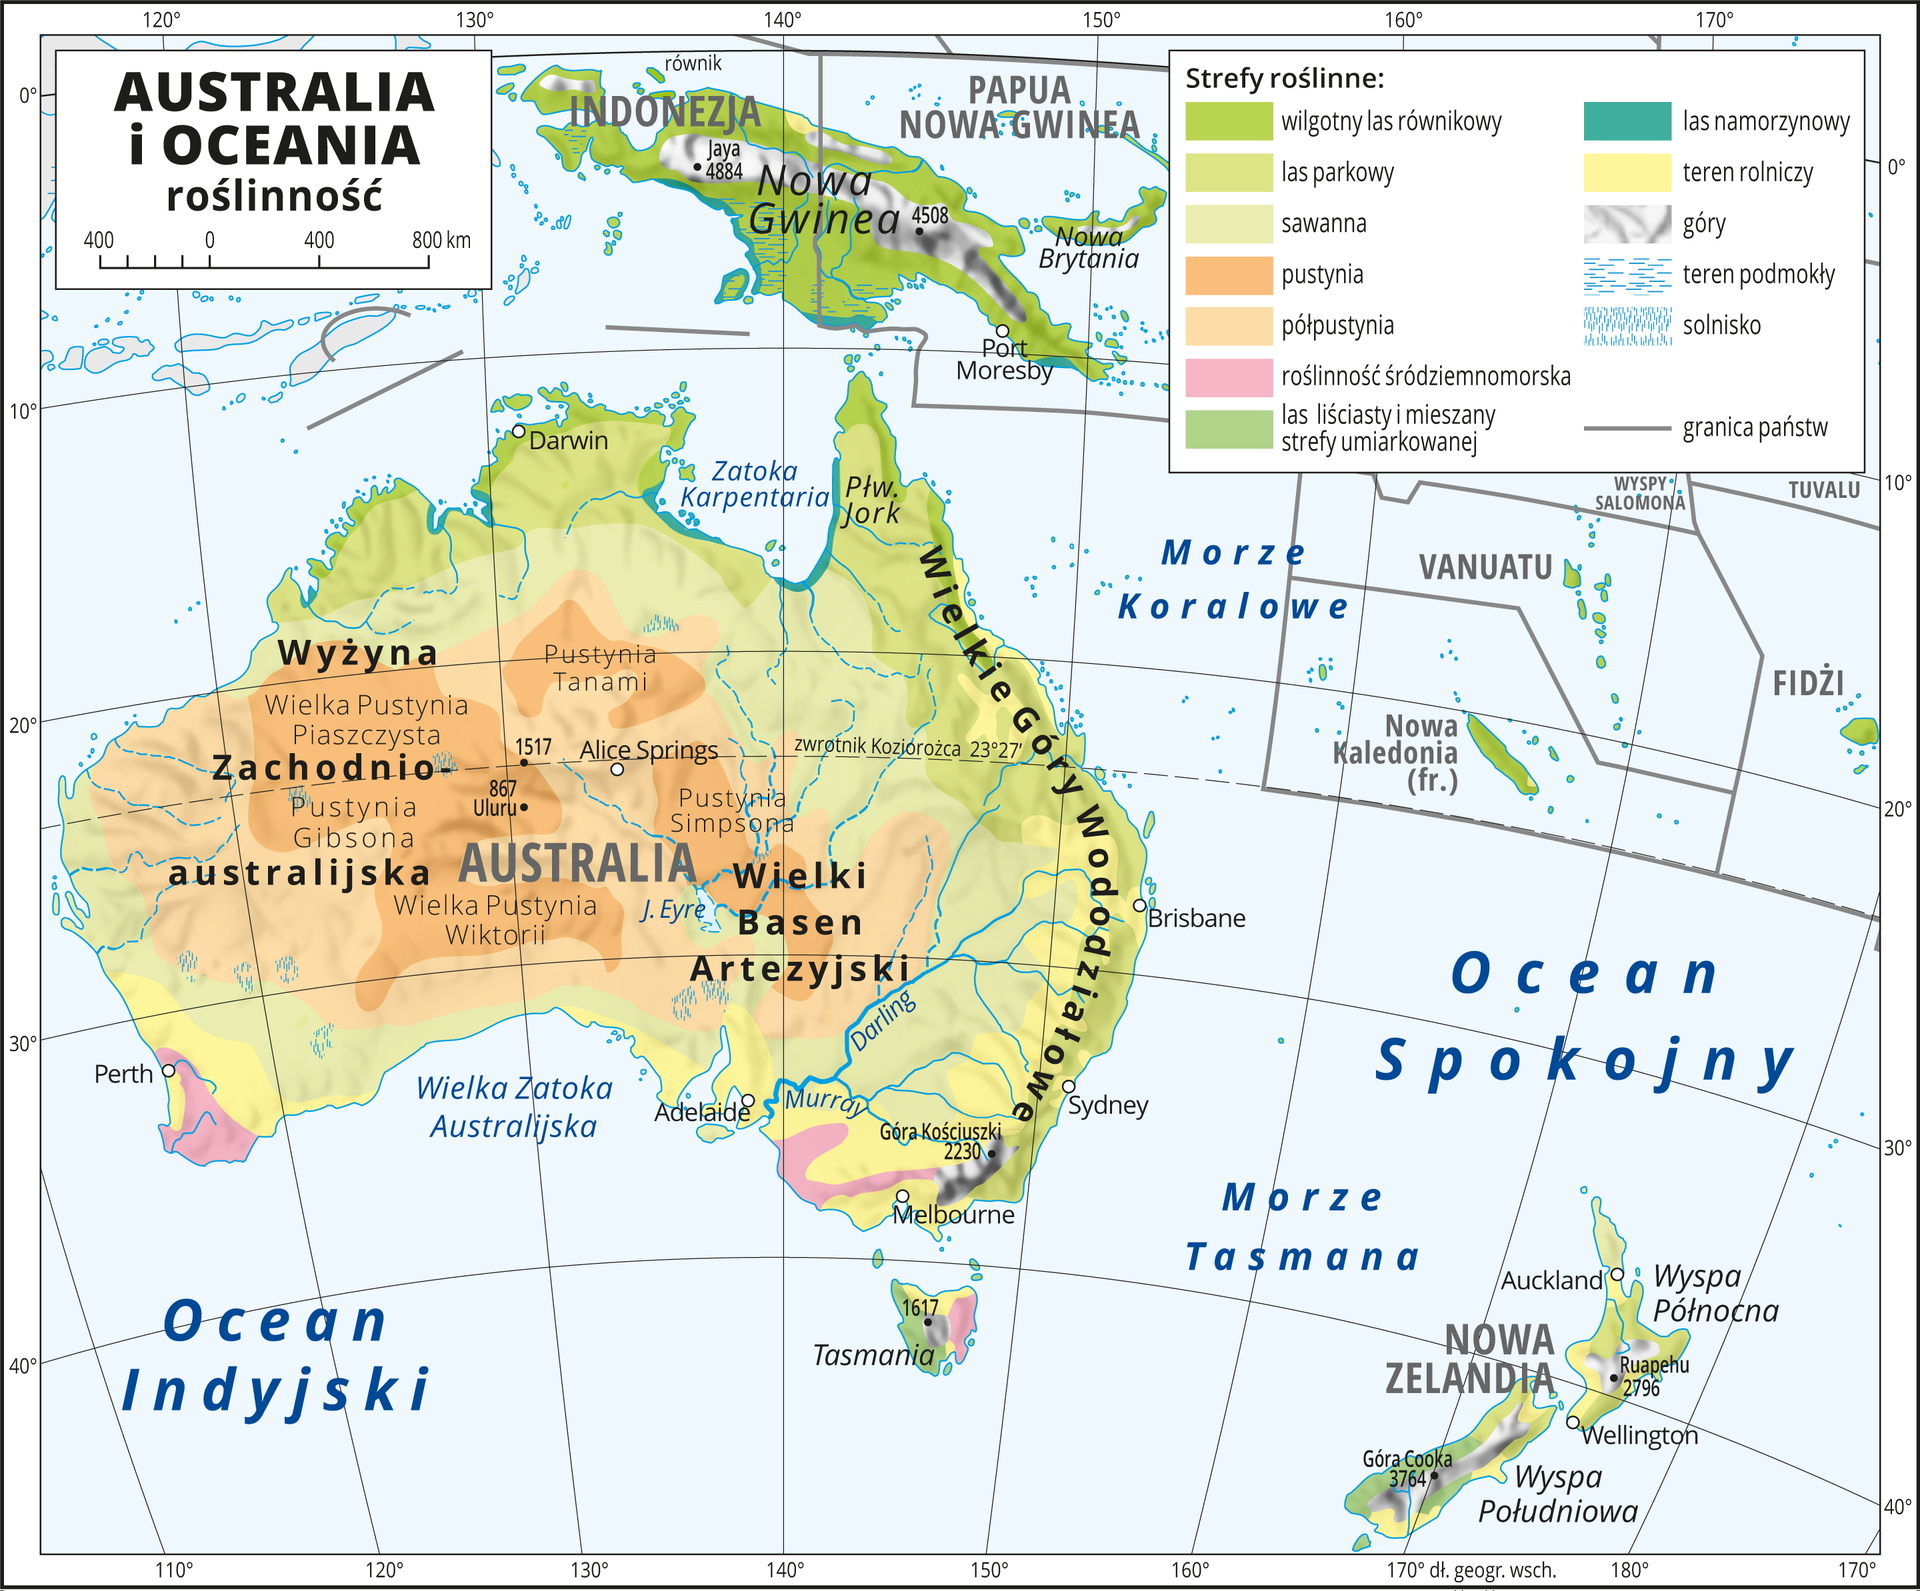 Ilustracja przedstawia mapę roślinności Australii i Oceanii. Kolorami oznaczono następujące strefy roślinne: wilgotny las równikowy, las parkowy, sawanna, pustynia, półpustynia, roślinność śródziemnomorska, las liściasty i mieszany strefy umiarkowanej, las namorzynowy. Wzdłuż równika (Nowa Gwinea) wilgotne lasy równikowe i lasy namorzynowe. W centrum i na wschodzie Australii pustynie i półpustynie. Dookoła sawanna. Na wschodnim wybrzeżu lasy parkowe i tereny rolnicze. Na najdalej wysuniętych na południe krańcach kontynentu – roślinność śródziemnomorska i tereny rolnicze. Na mapie południki i równoleżniki. Dookoła mapy w białej ramce opisano współrzędne geograficzne co dziesięć stopni. W legendzie umieszczono i opisano kolory użyte na mapie.